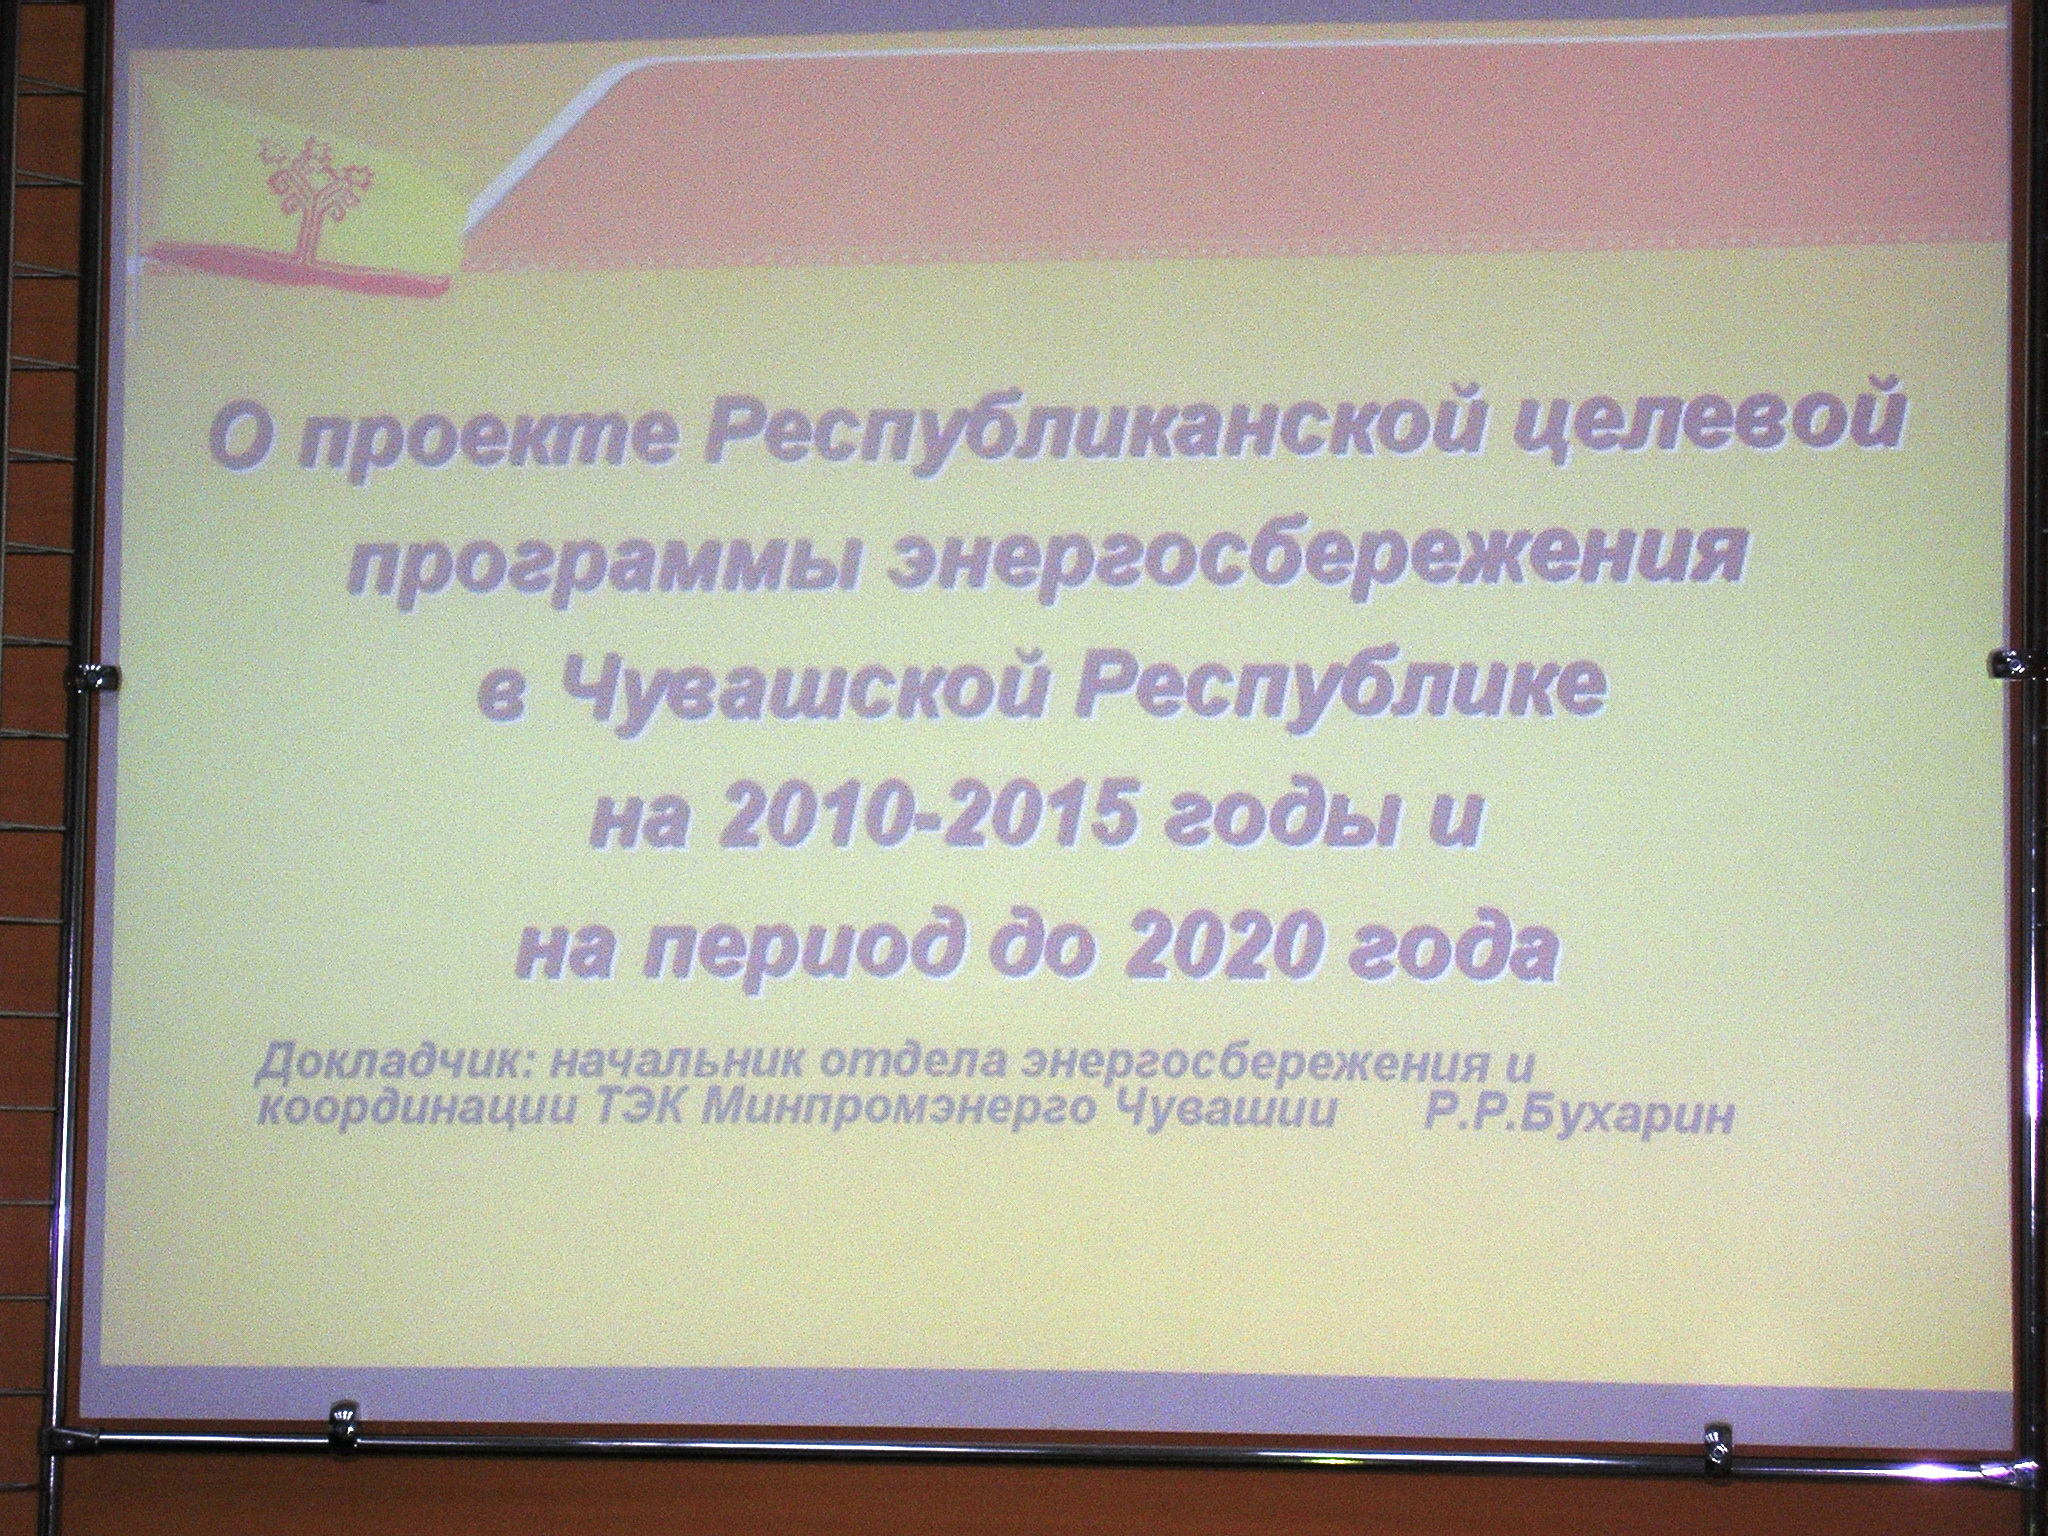 17:04 Совет по энергетической политике обсудил программу энергосбережения в Чувашской Республике